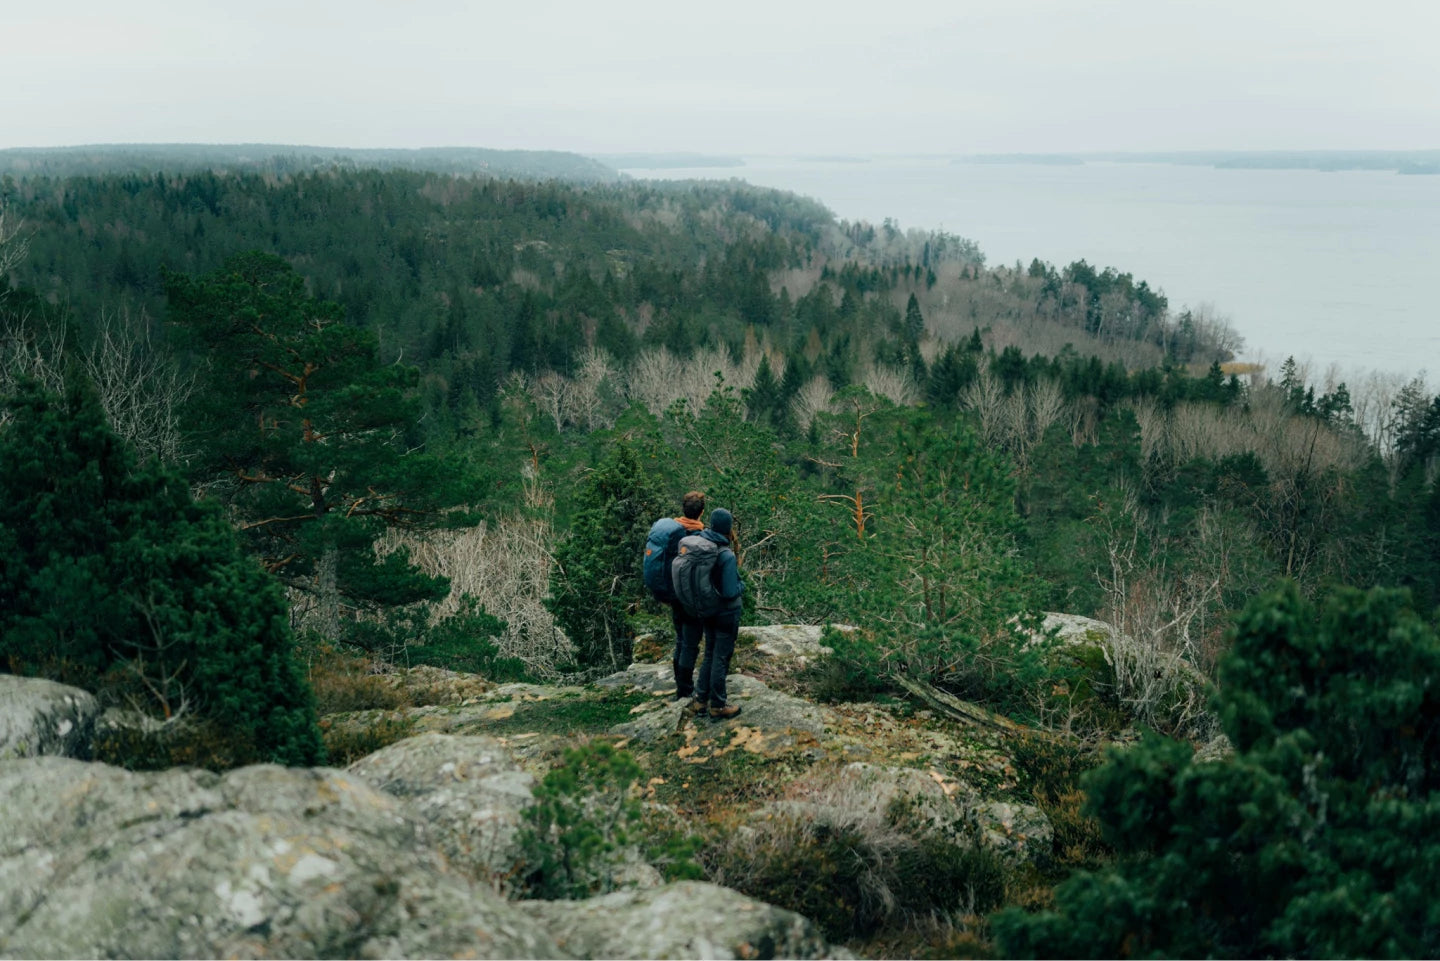 Explore Trekking at Fjällräven